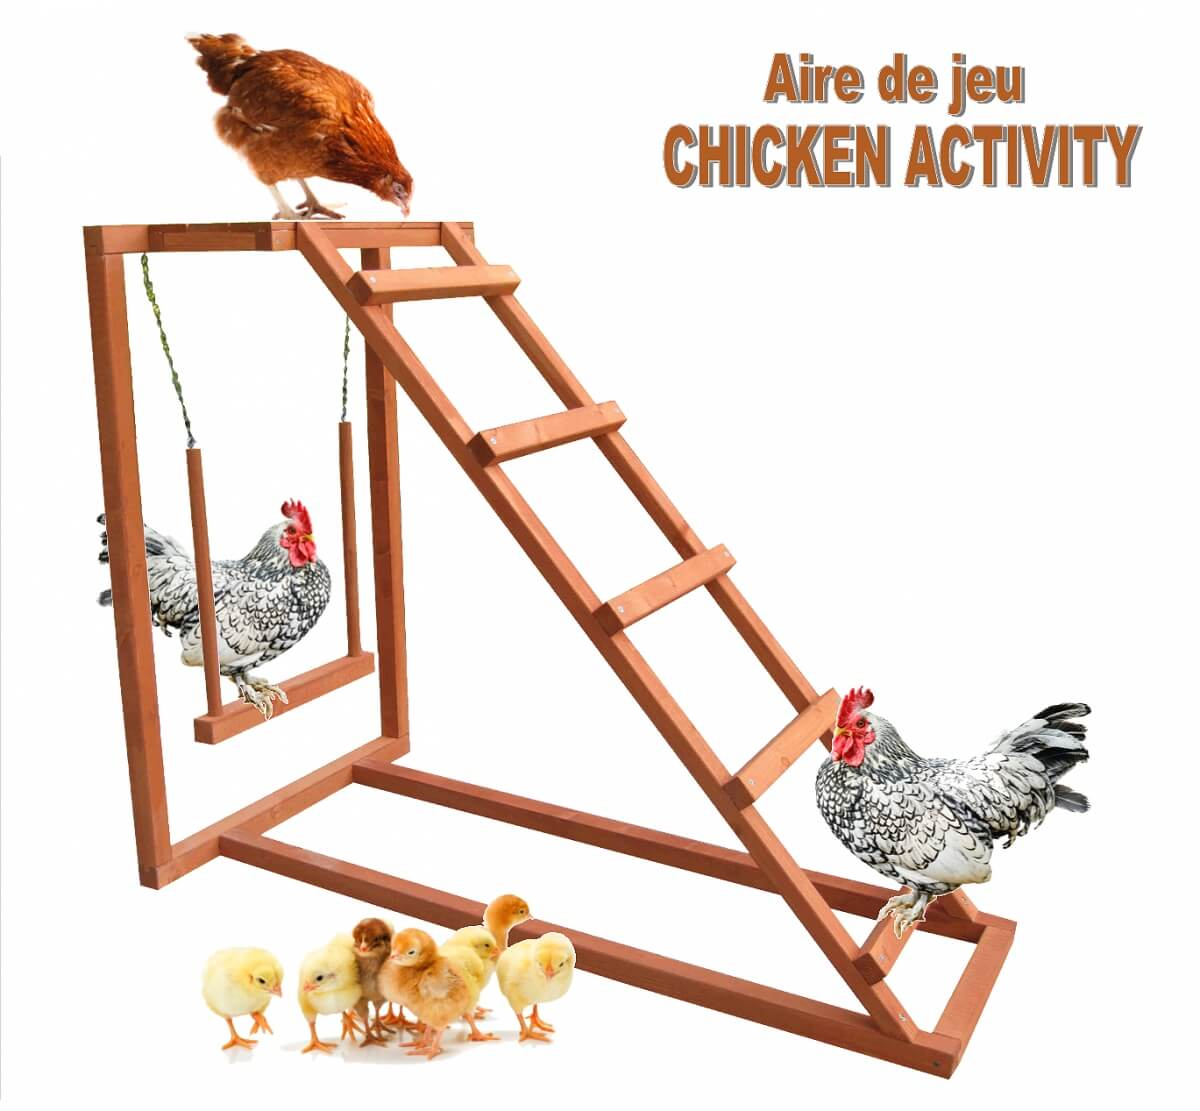 Aire de jeu Chicken Activity pour poules